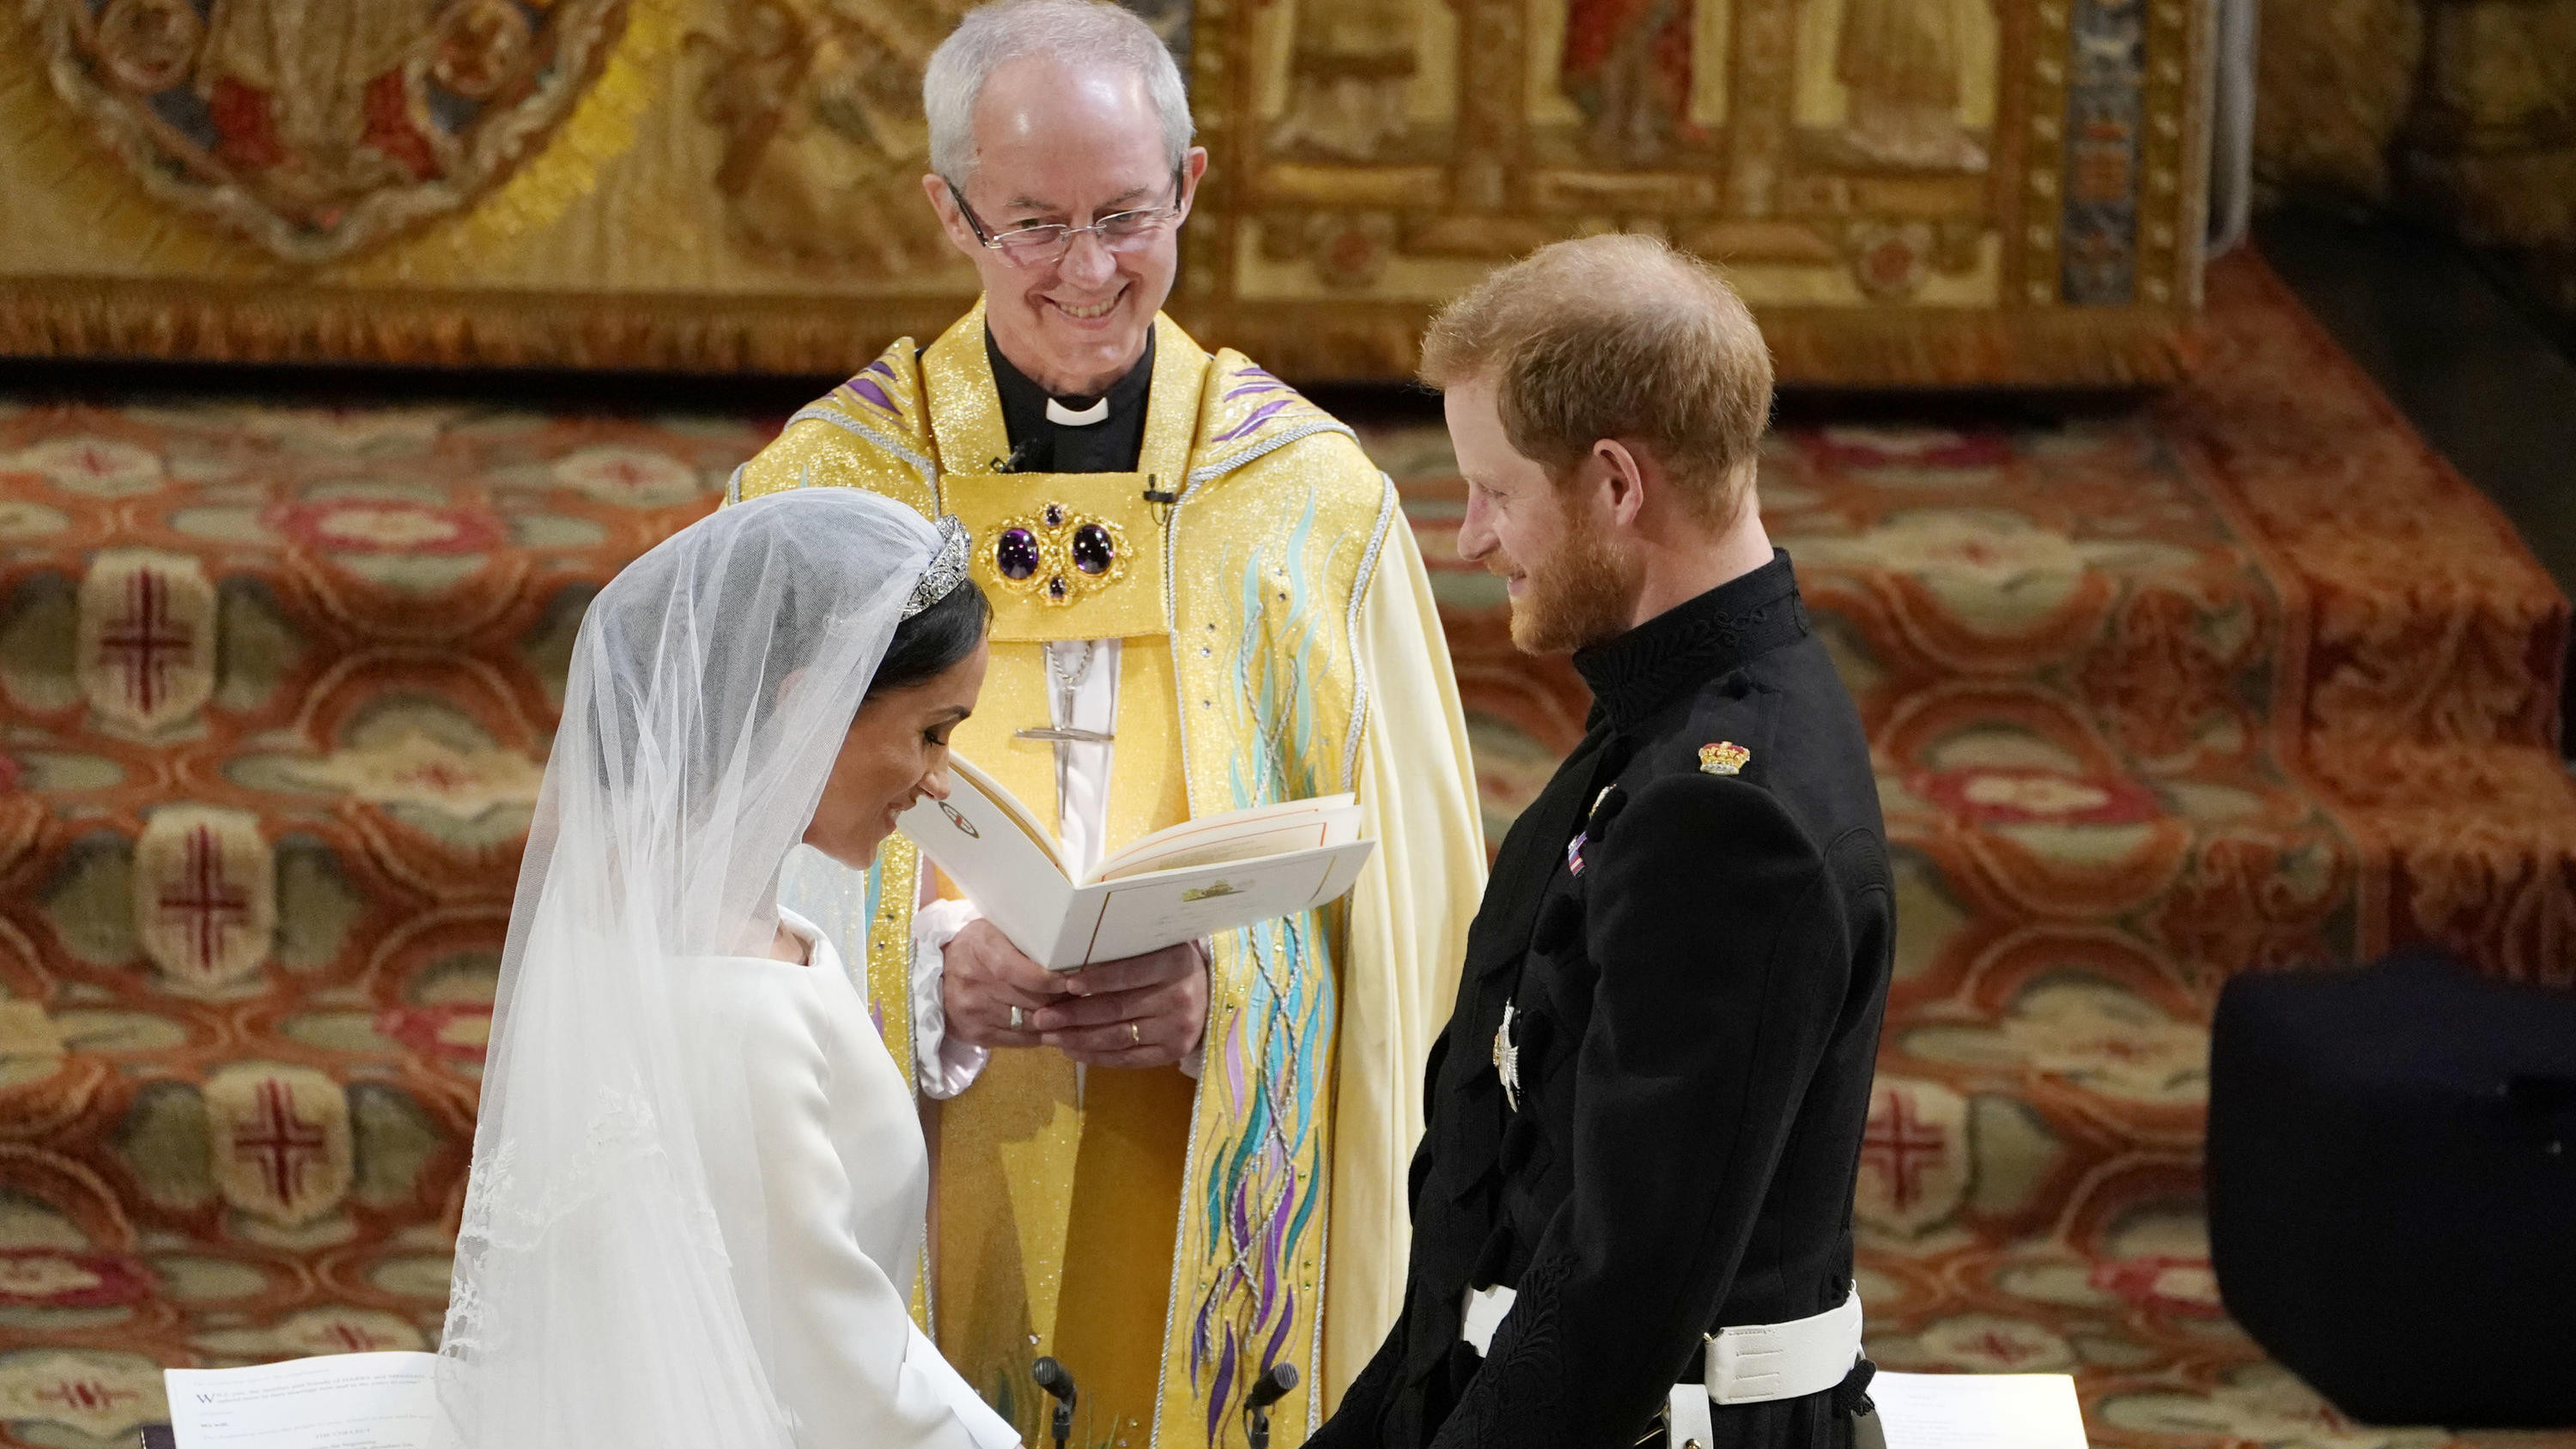 Hochzeit In England Prinz Harry
 Hochzeit von Meghan Markle und Prinz Harry So reagieren